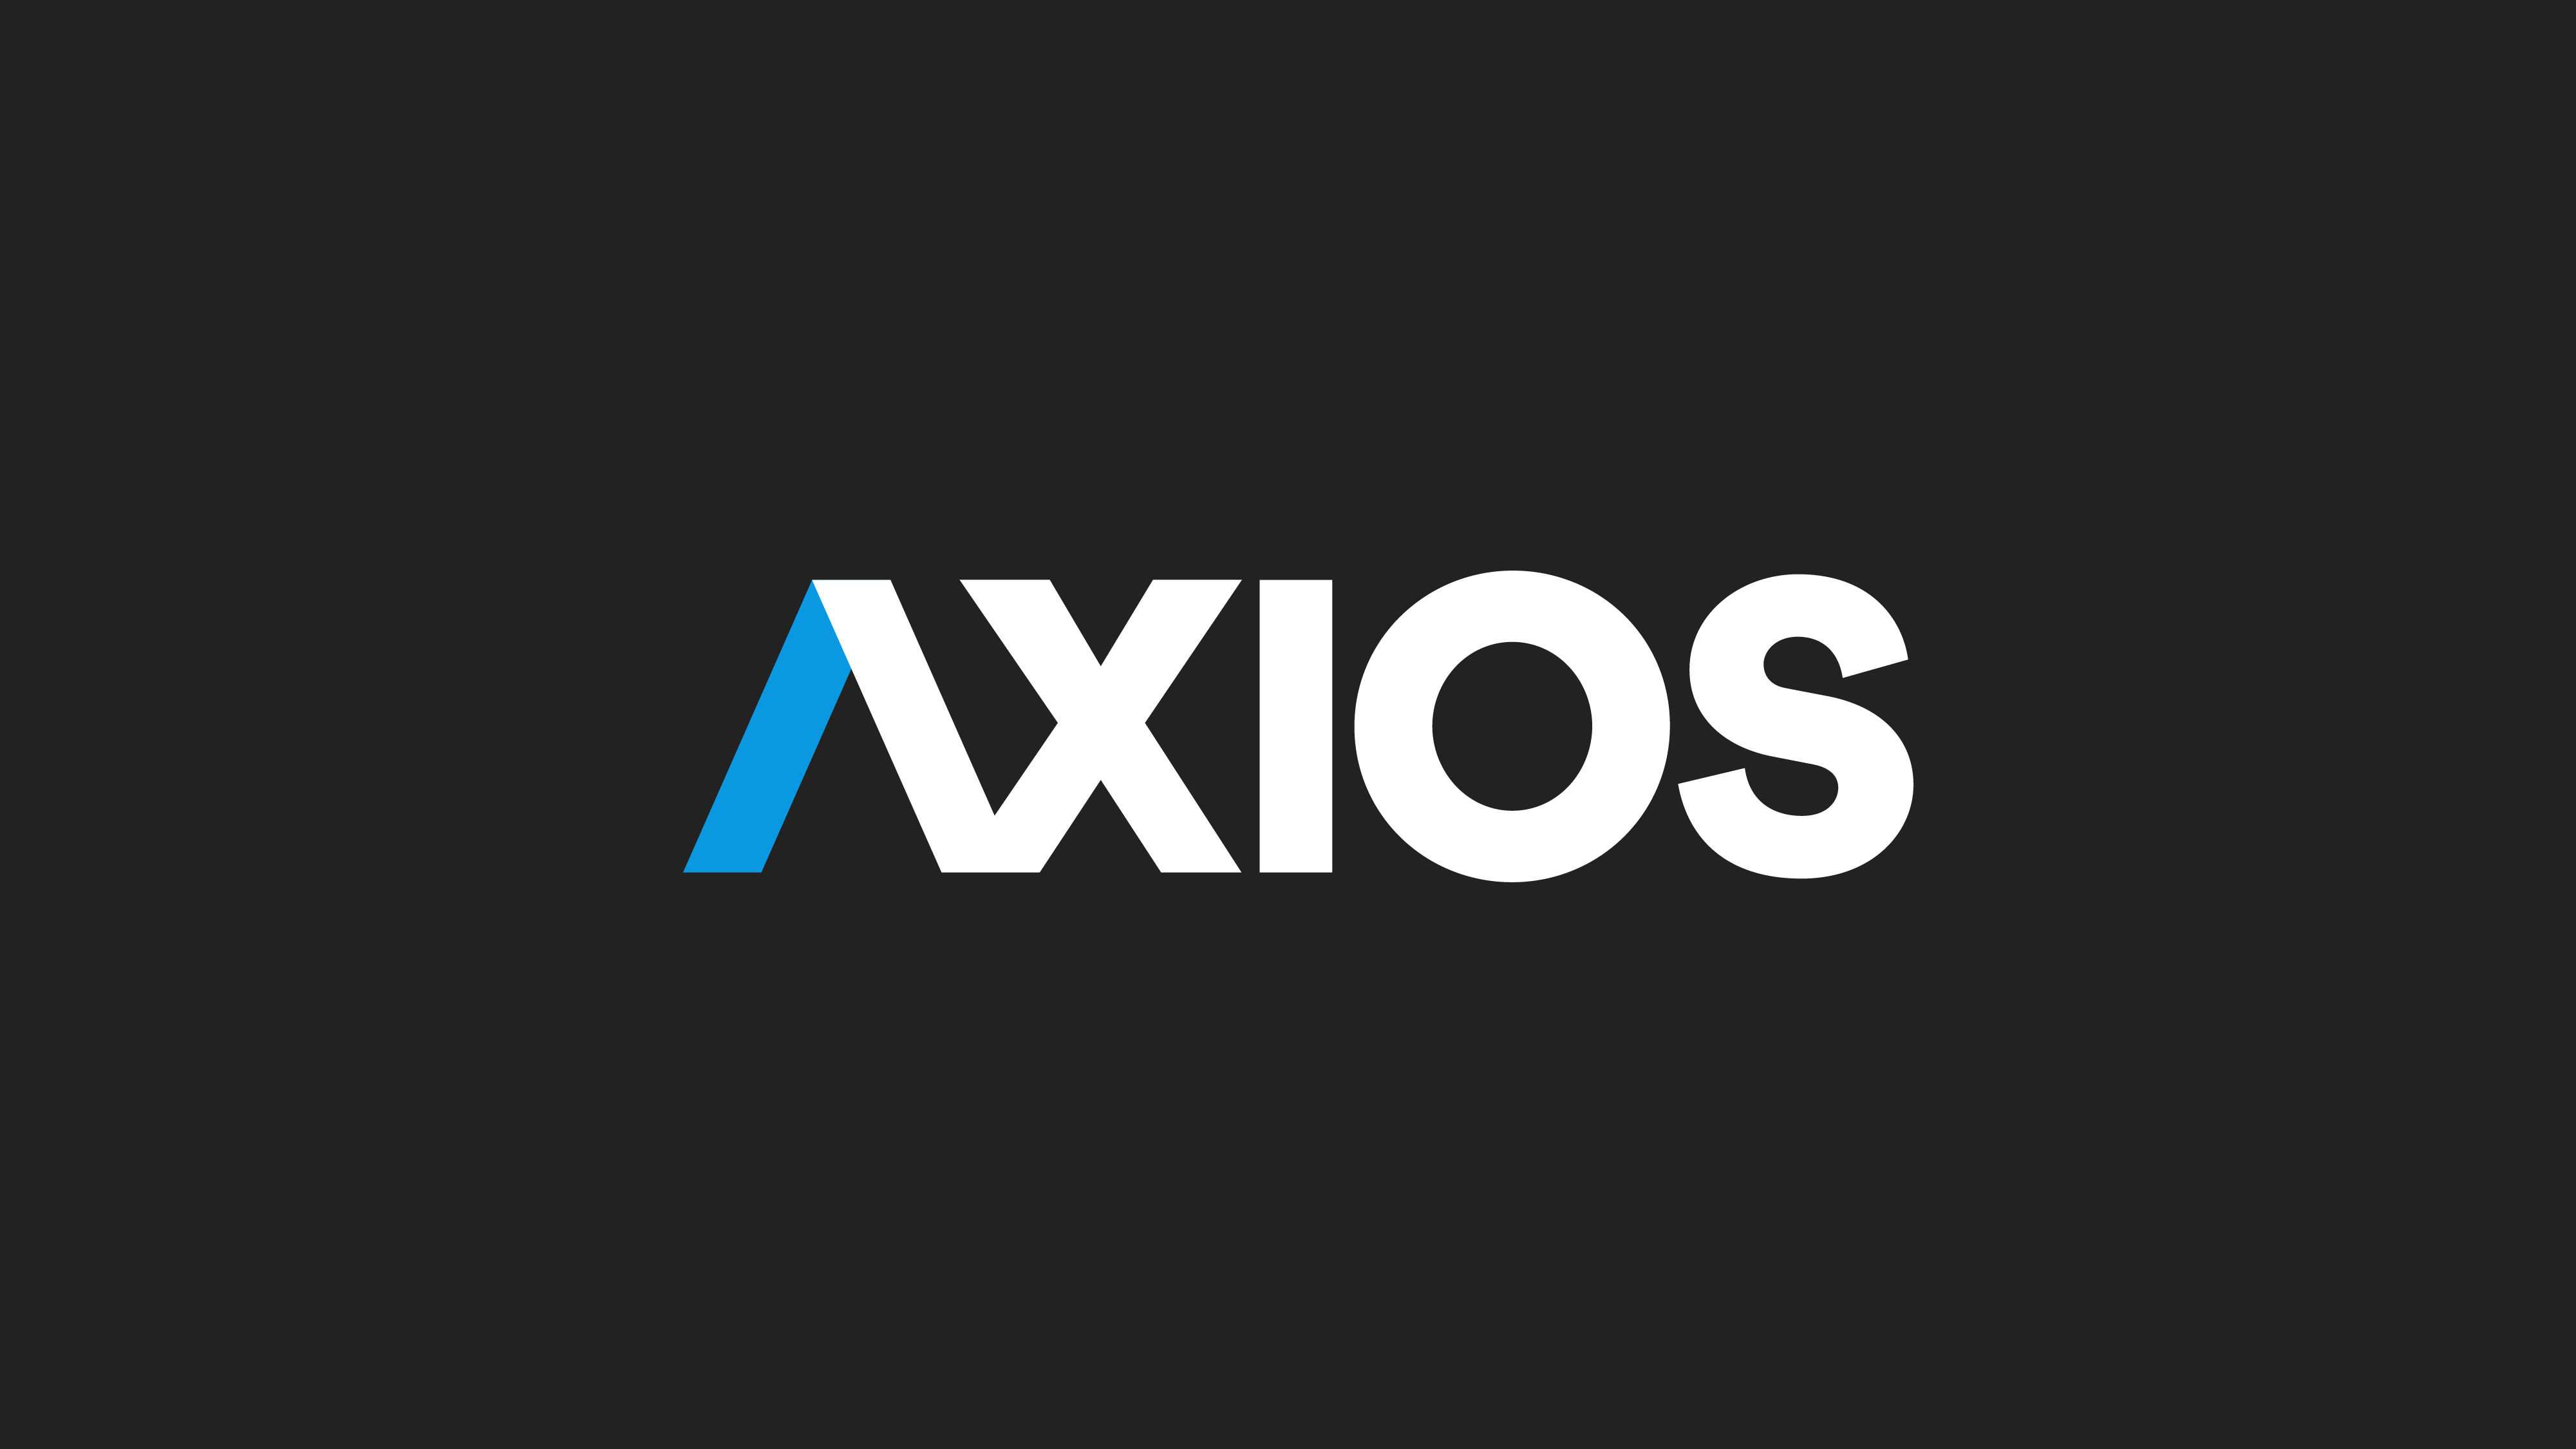 AXIOS 개발자 채용 공고문에서 배울 것들